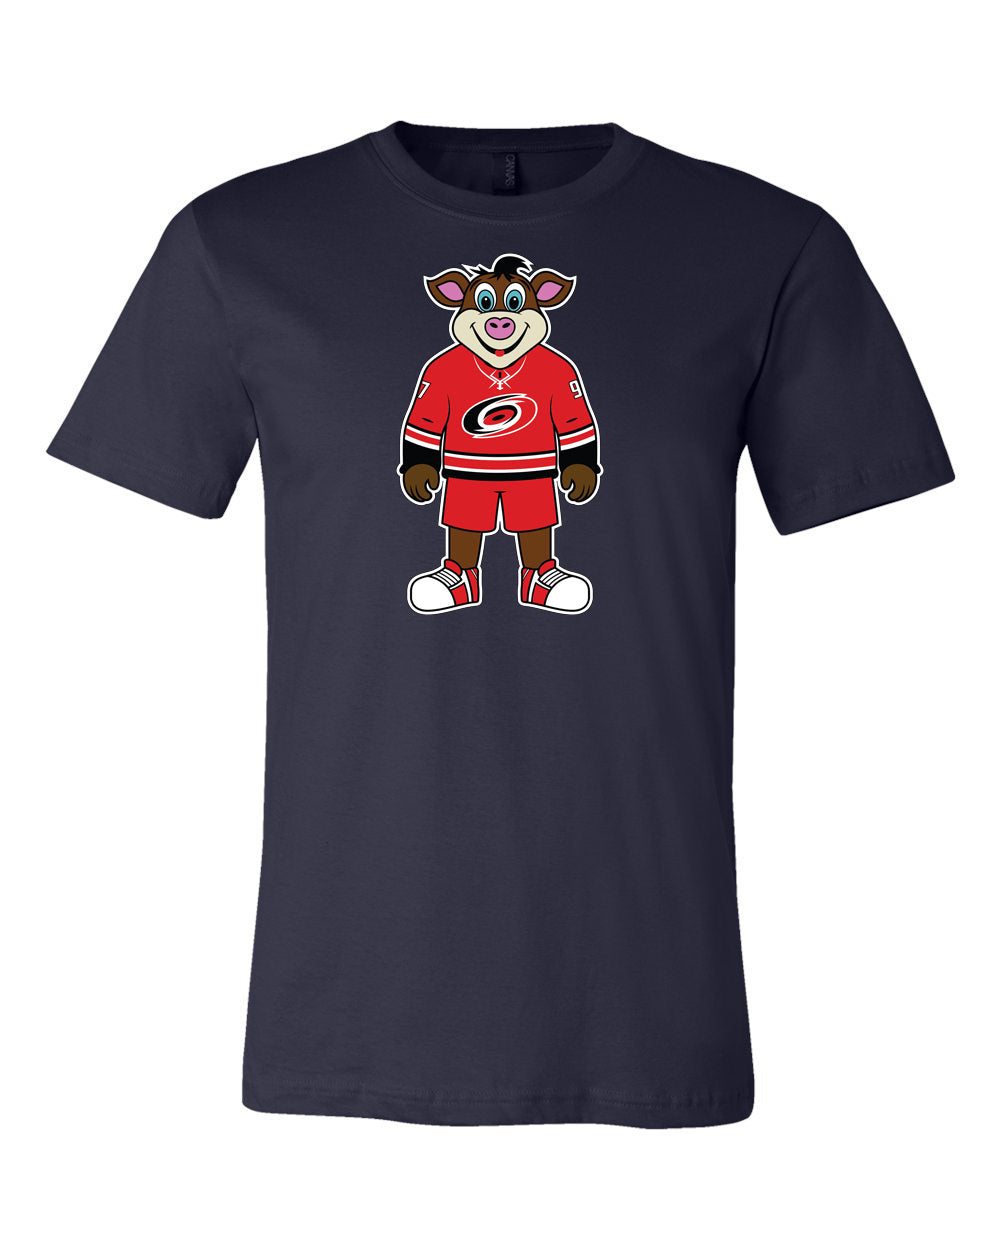 Carolina Hurricanes Mascot Shirt, Stormy Mascot Shirt 🏒🏆